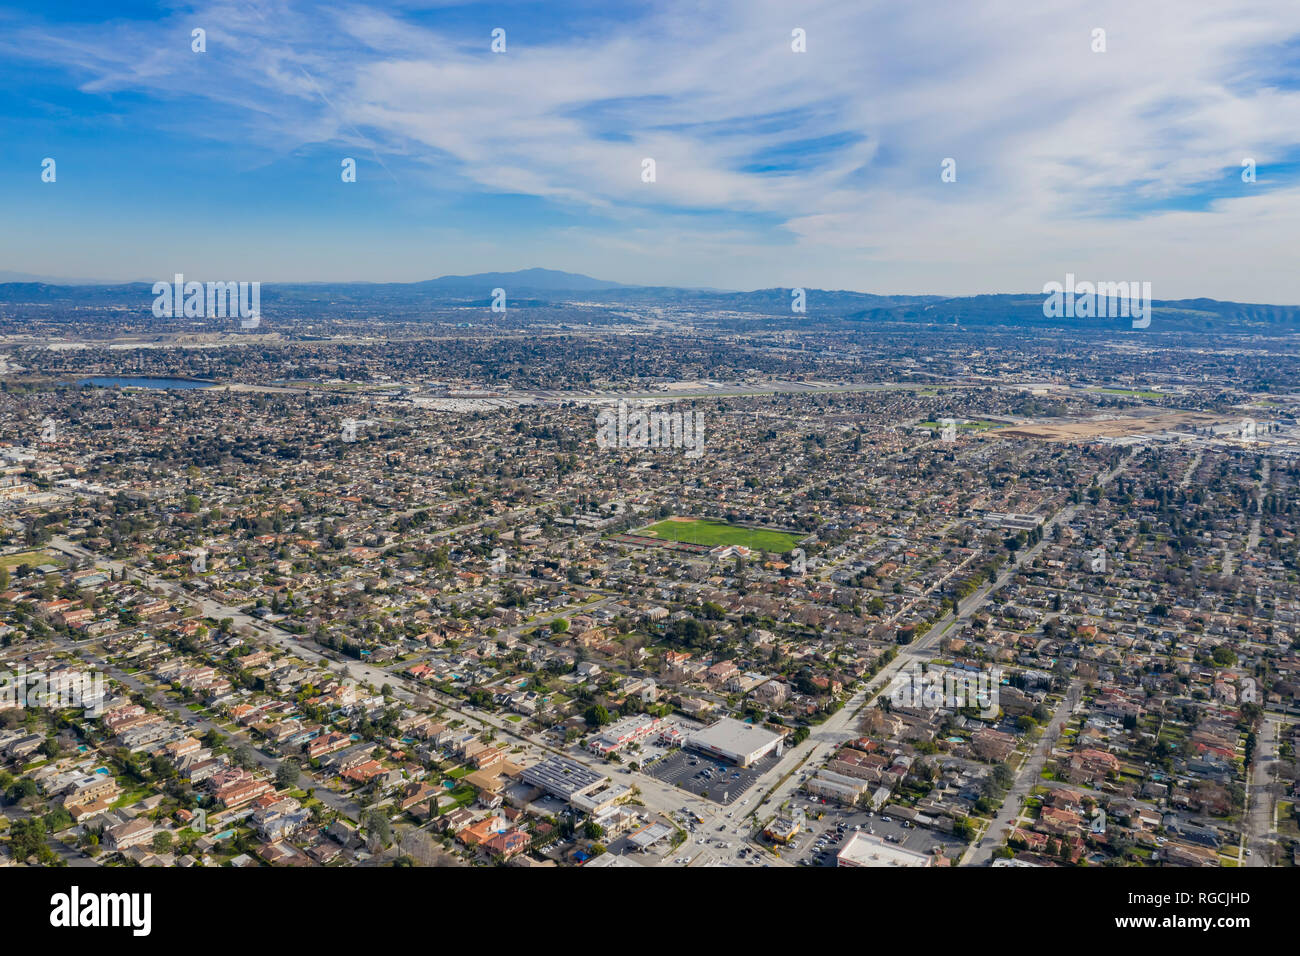 Vue aérienne de la ville du Temple, région d'Arcadia à Los Angeles County, Californie Banque D'Images